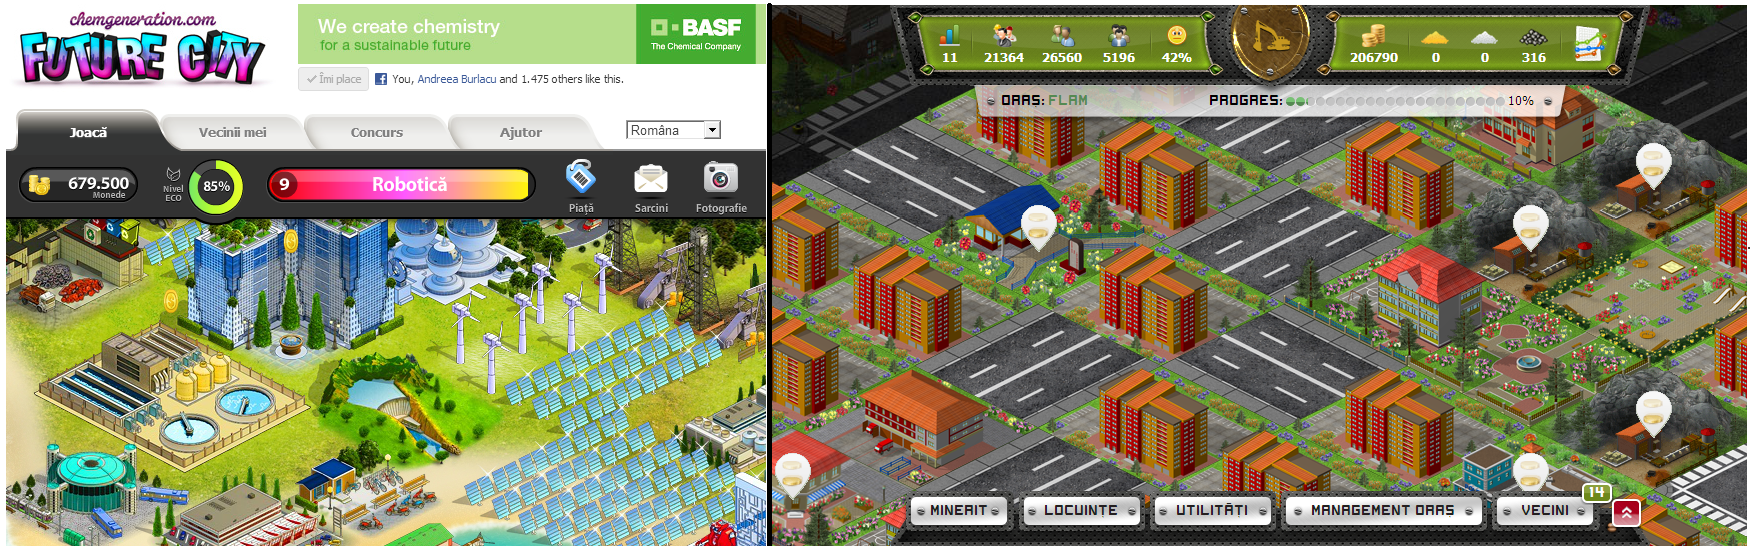 Future City – acest ”farmville” făcut pentru BASF